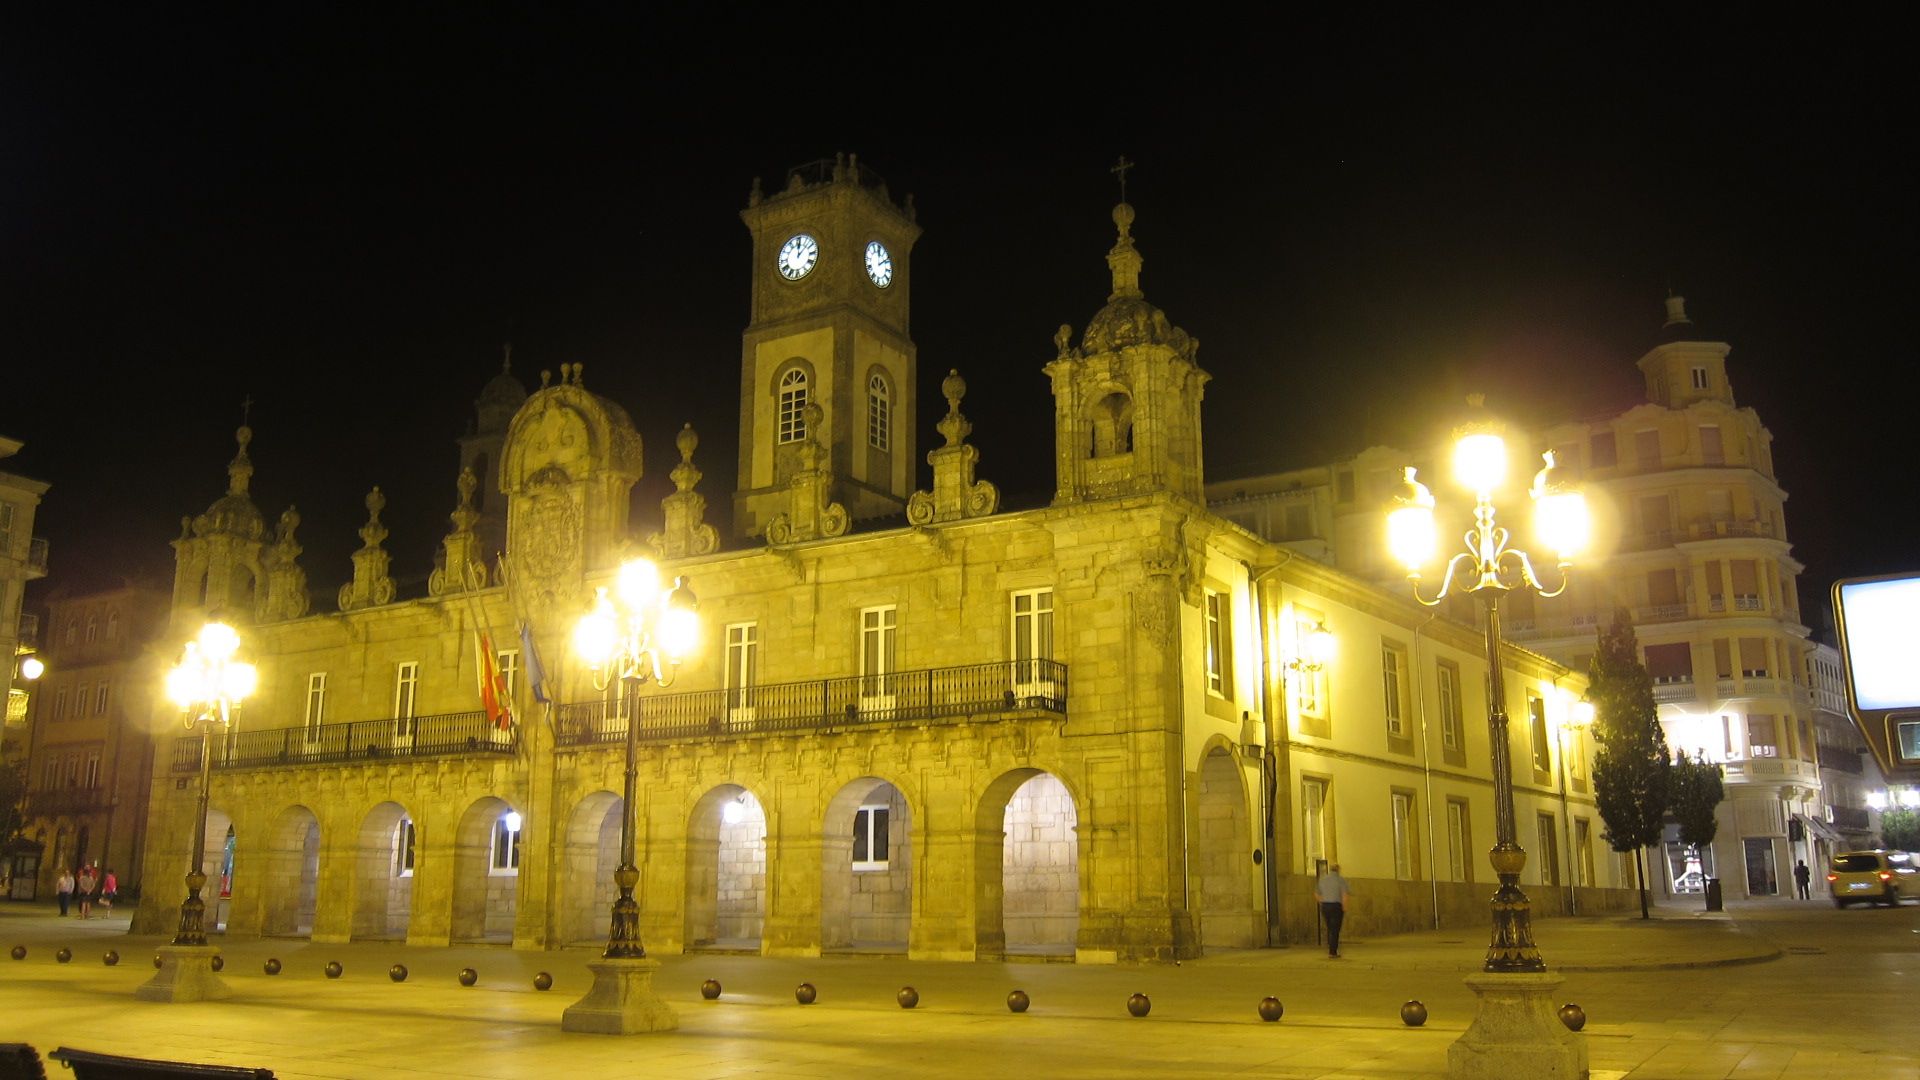 Lugo, Mondoñedo y la playa de As Catedrais - Roadtrip por el Noroeste de España (2)